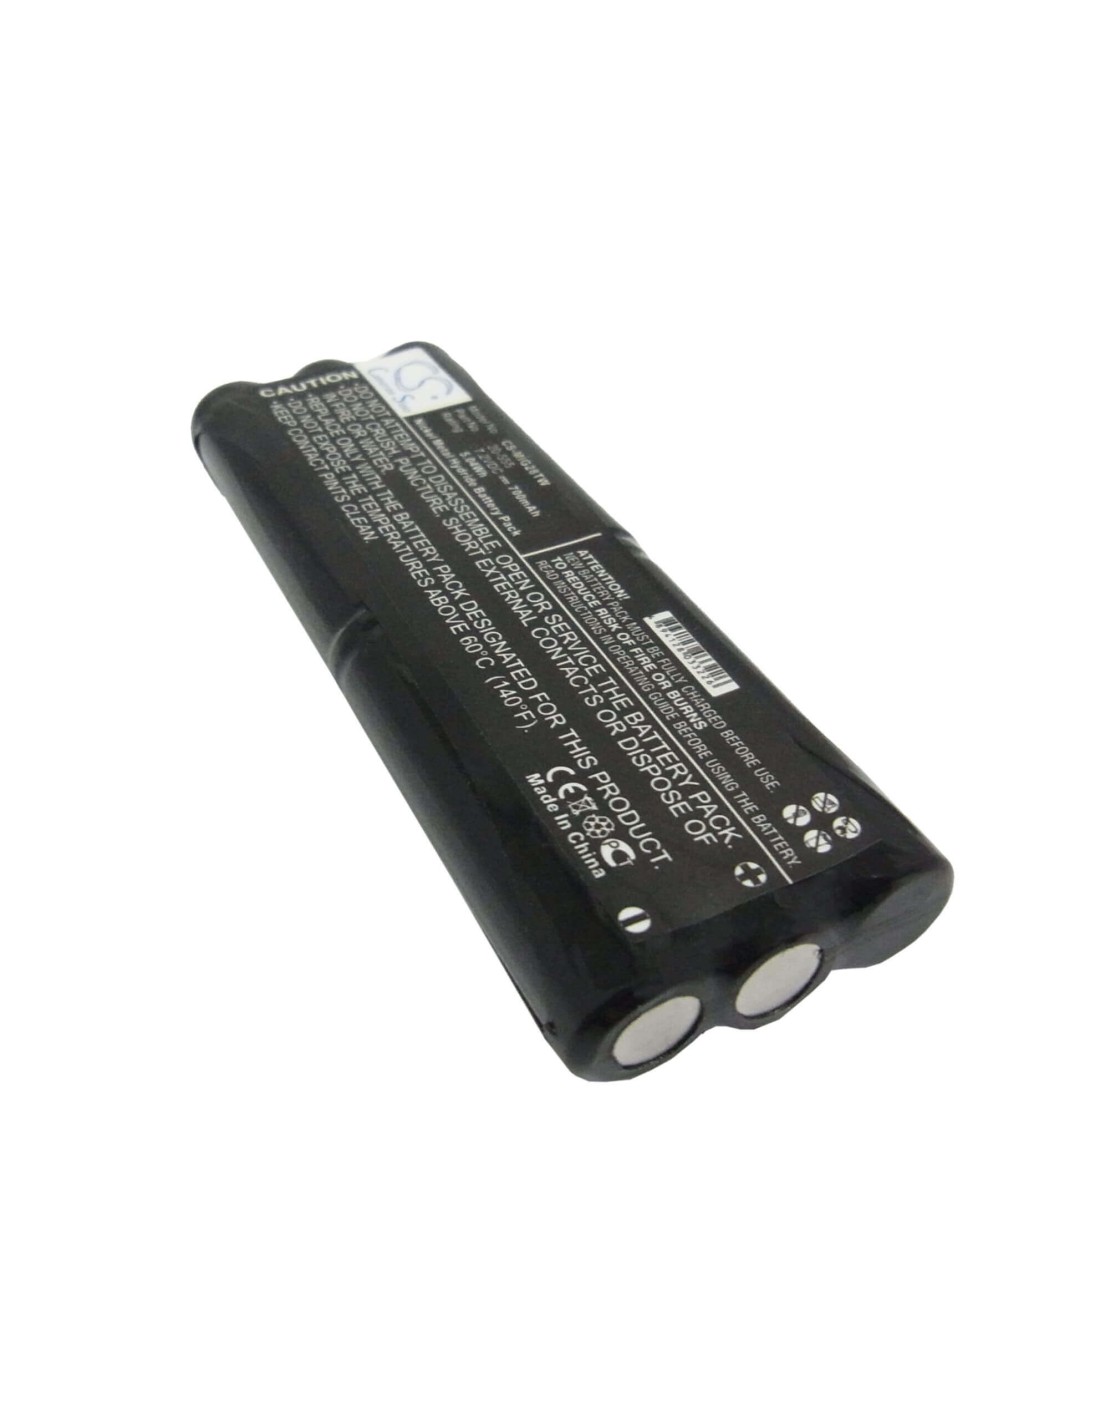 Battery for Midland G-28, G-30 7.2V, 700mAh - 5.04Wh